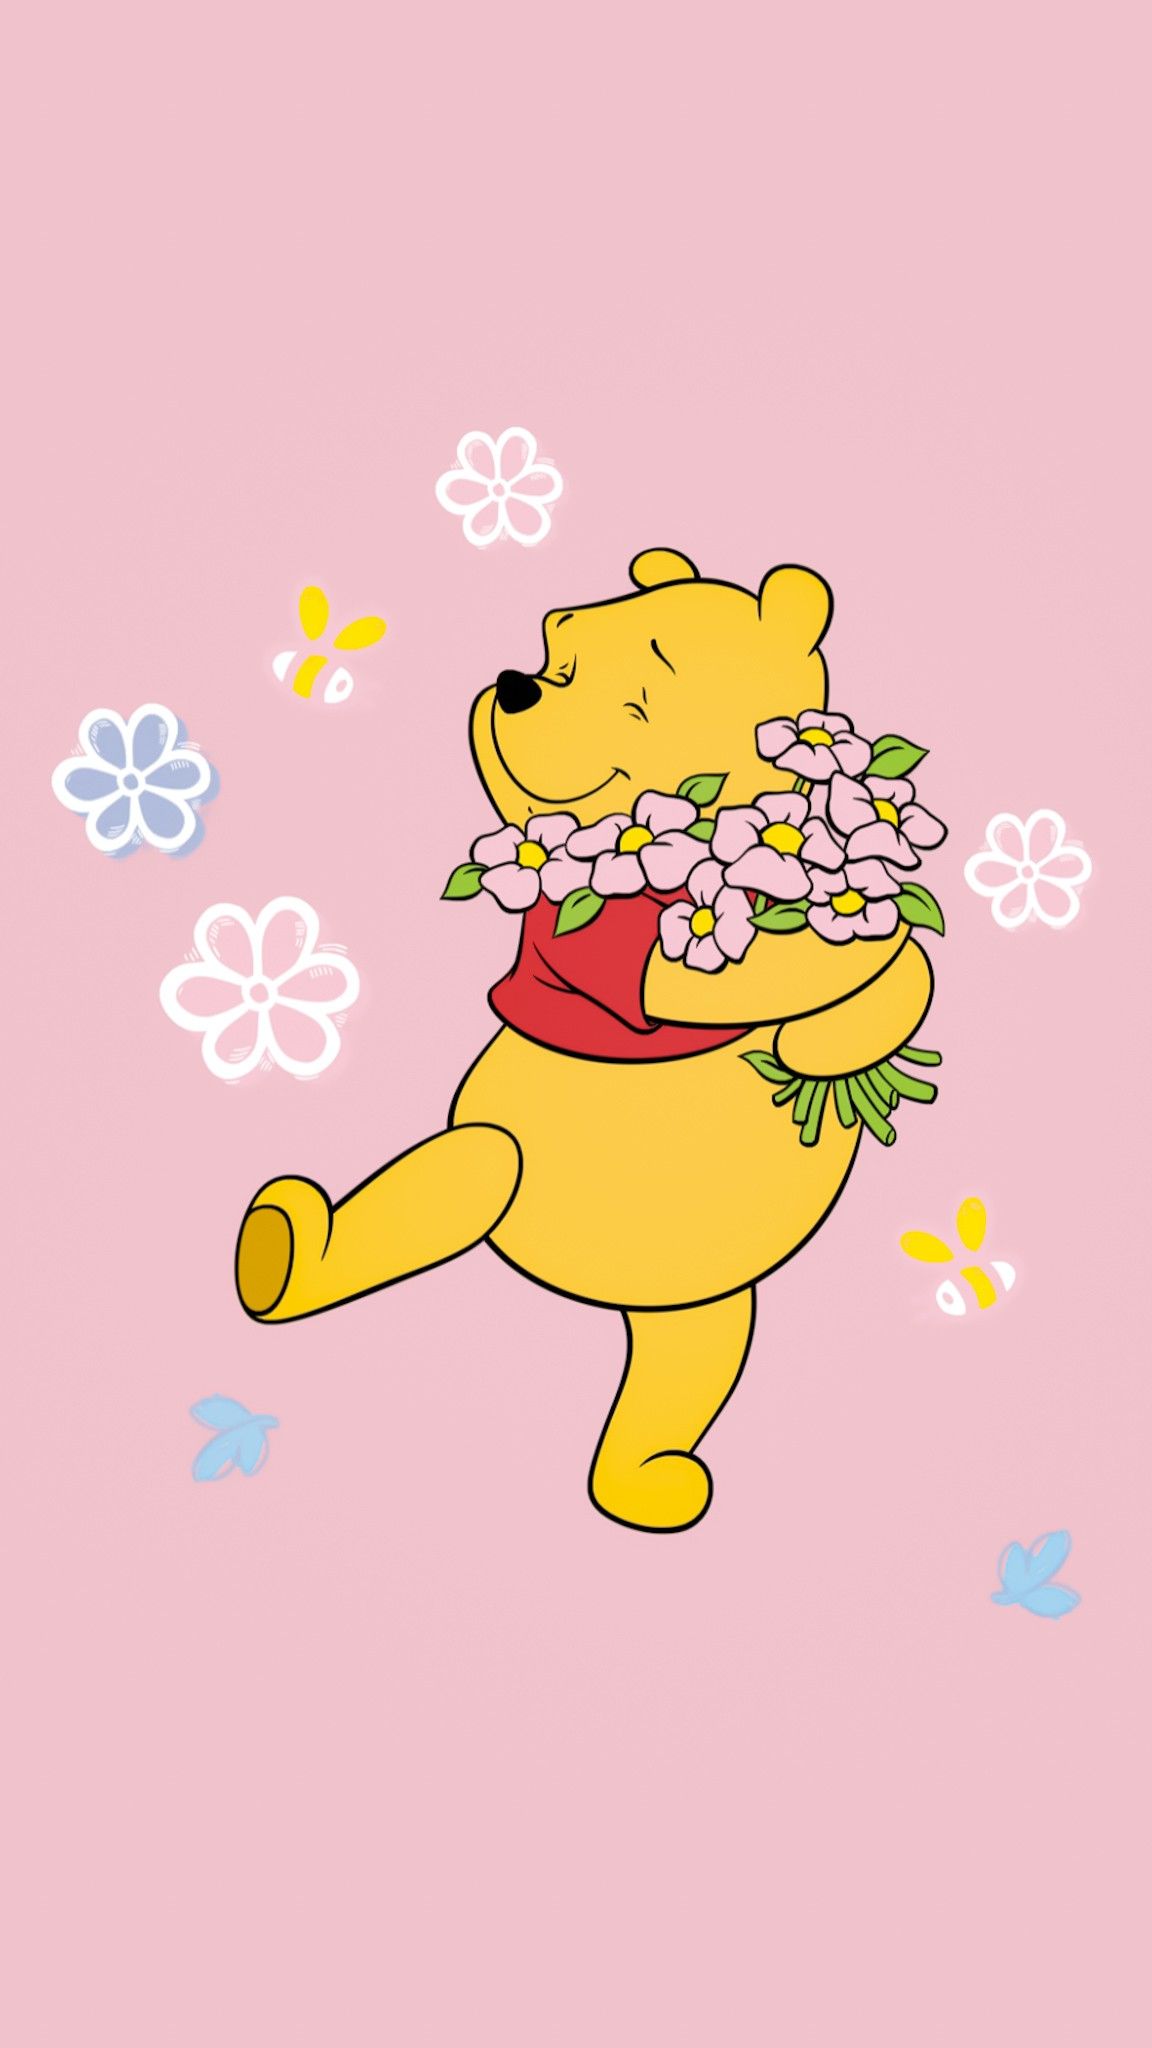 Alisa_1991 adlı kullanıcının Winnie The Pooh BG panosundaki Pin. Sevimli karikatür, Sevimli illüstrasyon, Disney çizimleri